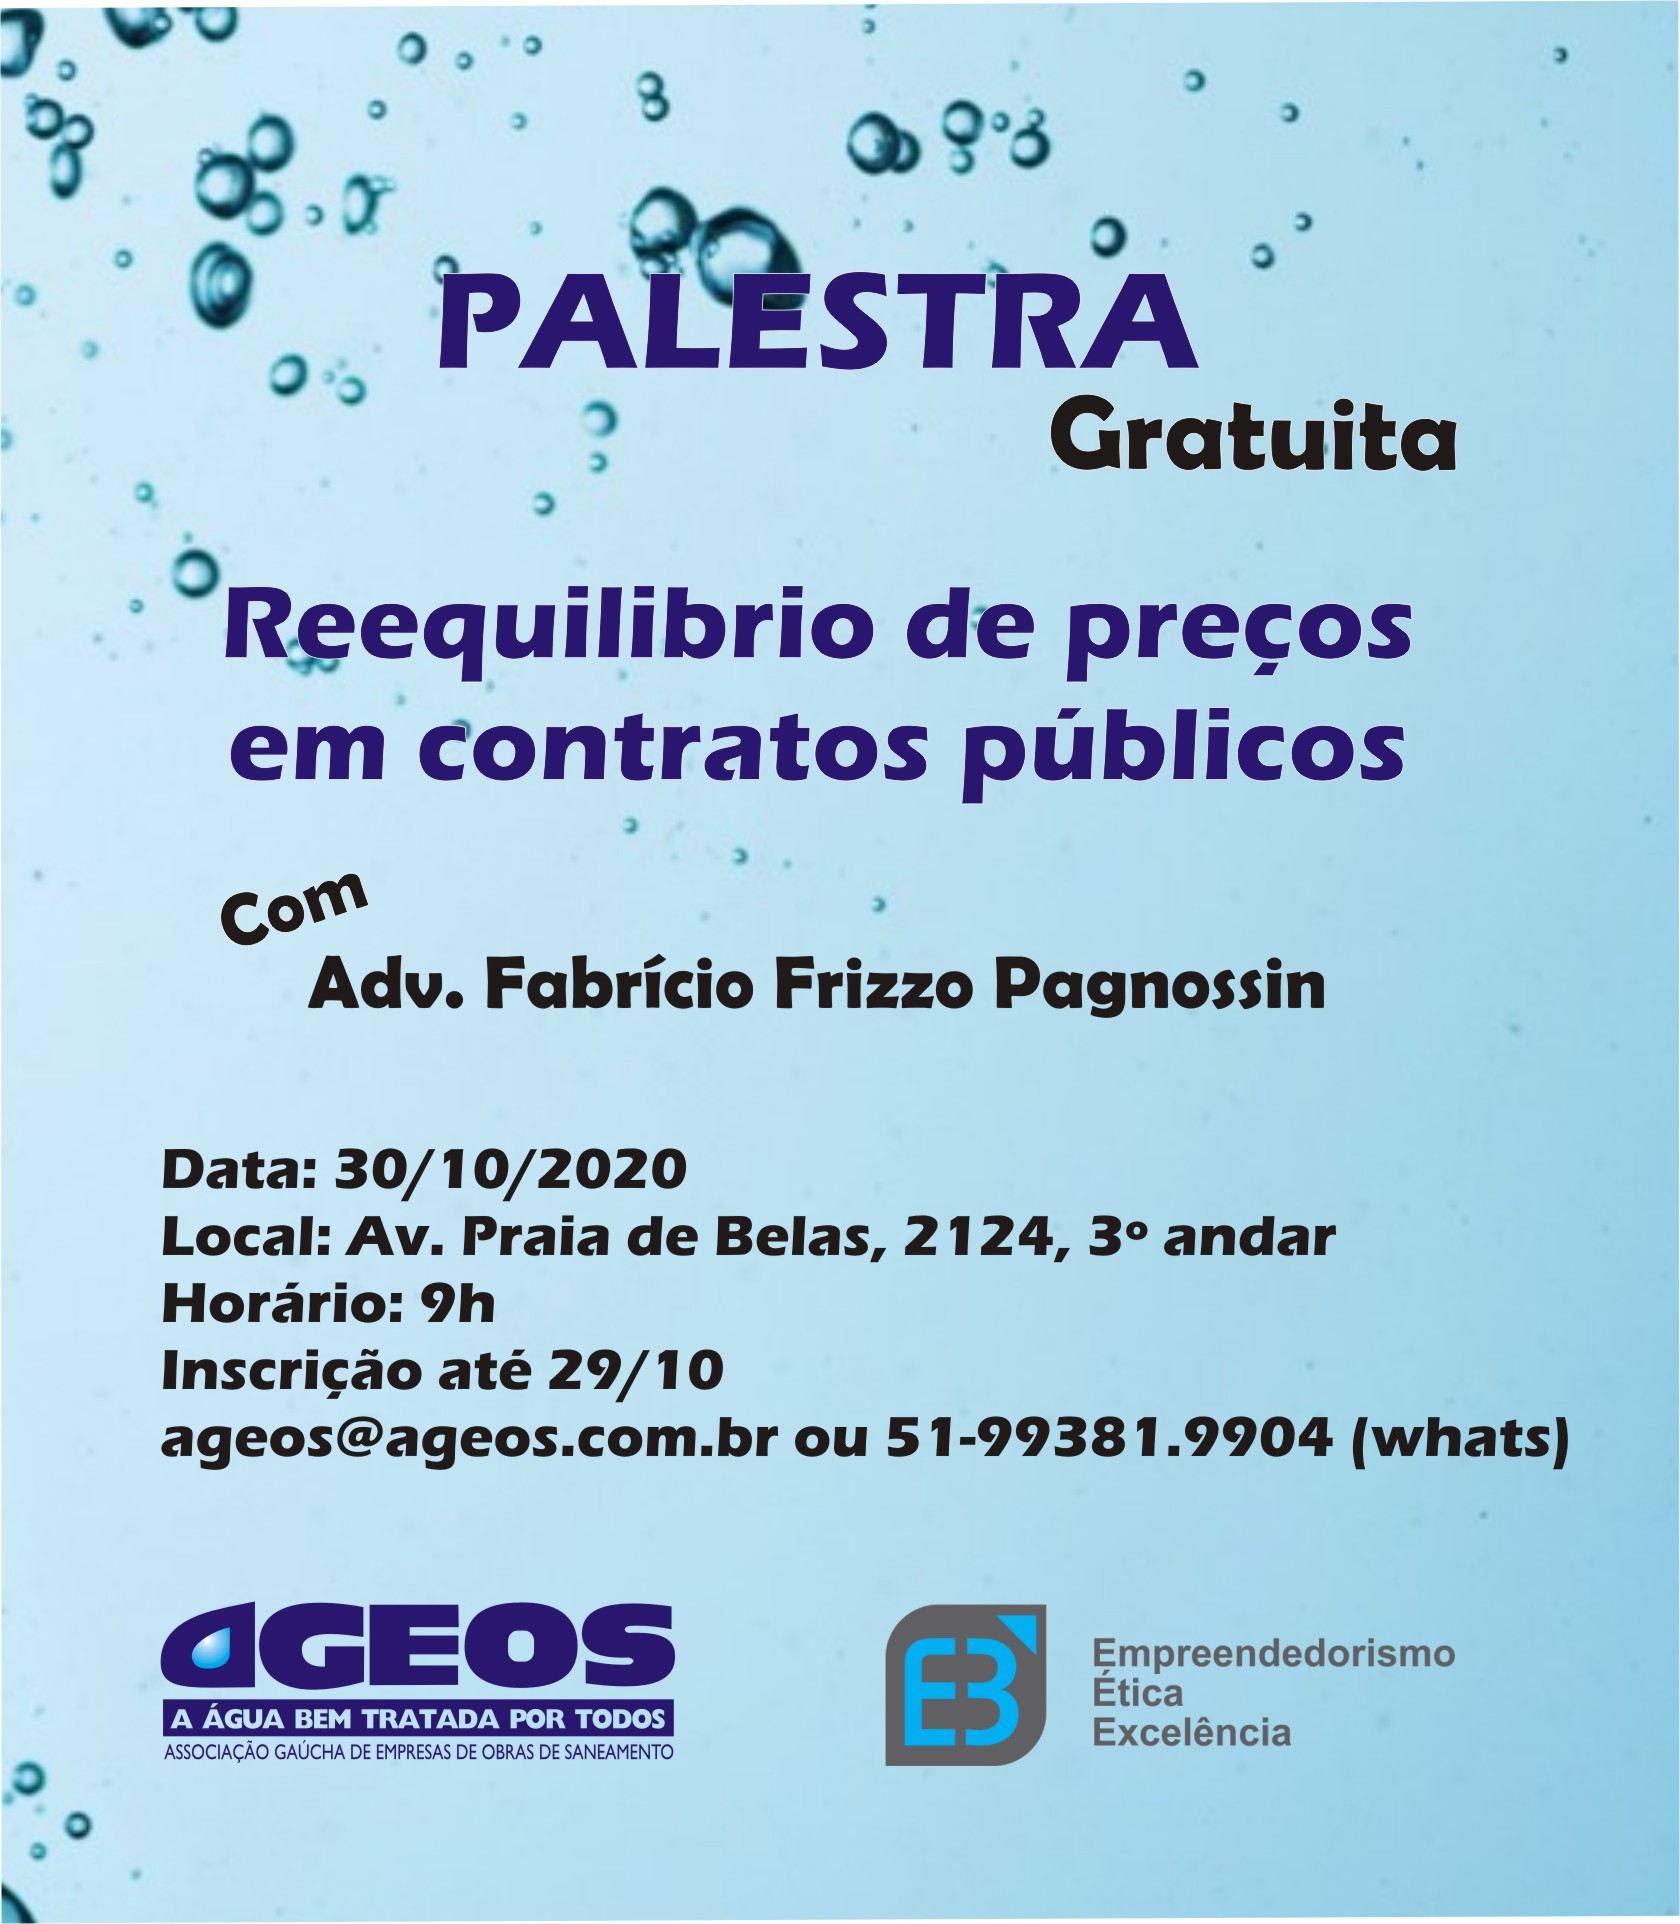 Palestra AGEOS: Reequilíbrio de preços em contratos públicos